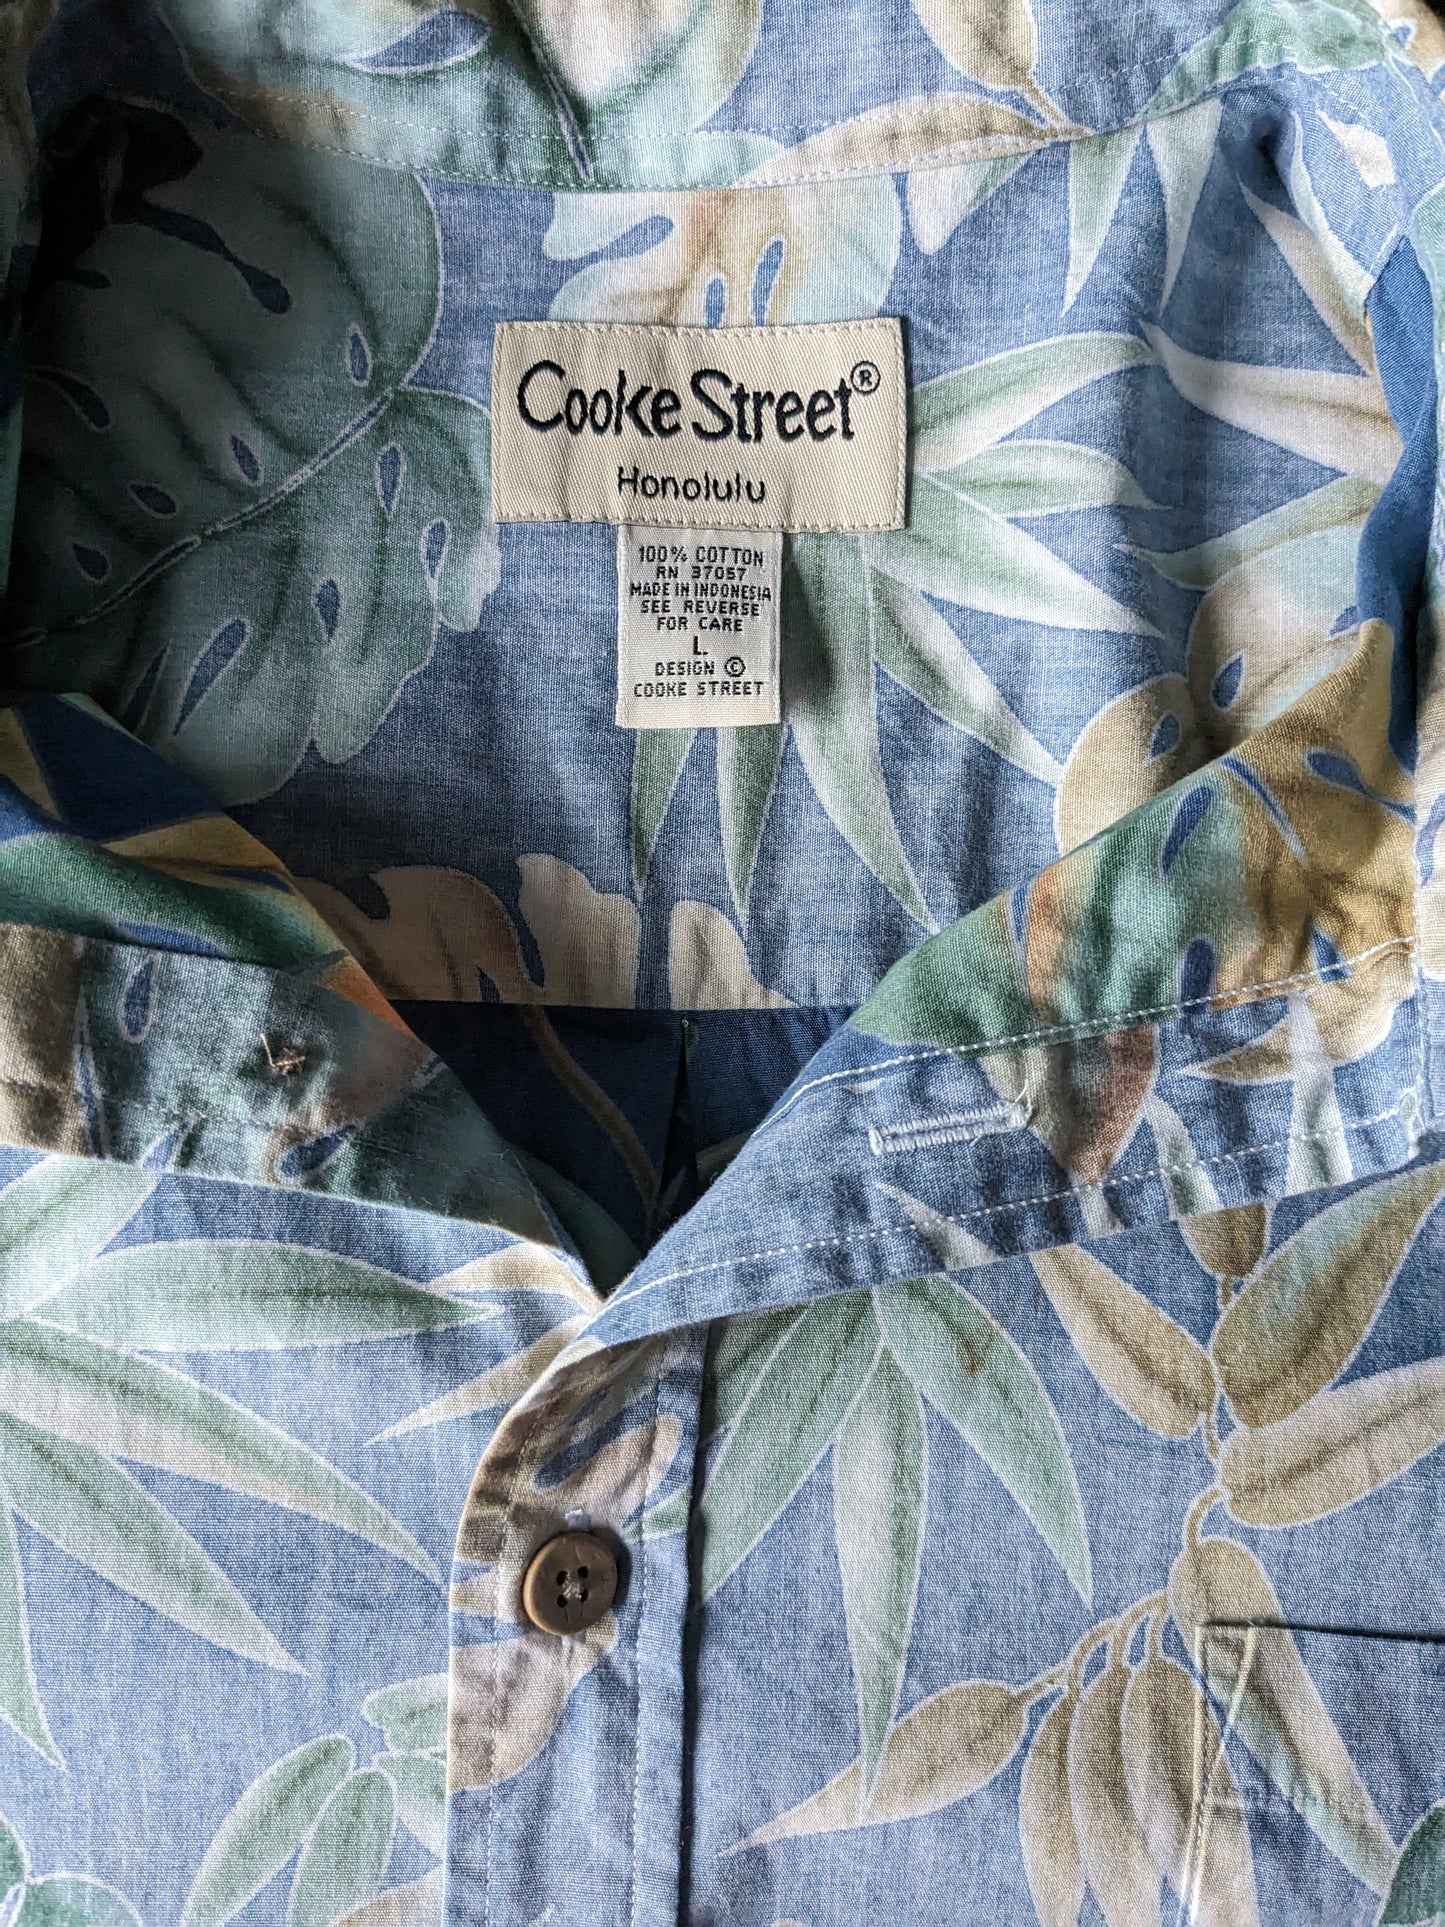 Cook Street Honolulu Original Hawaii Shirt Sleeve. Motif de feuille vert beige bleu. Taille l / xl.